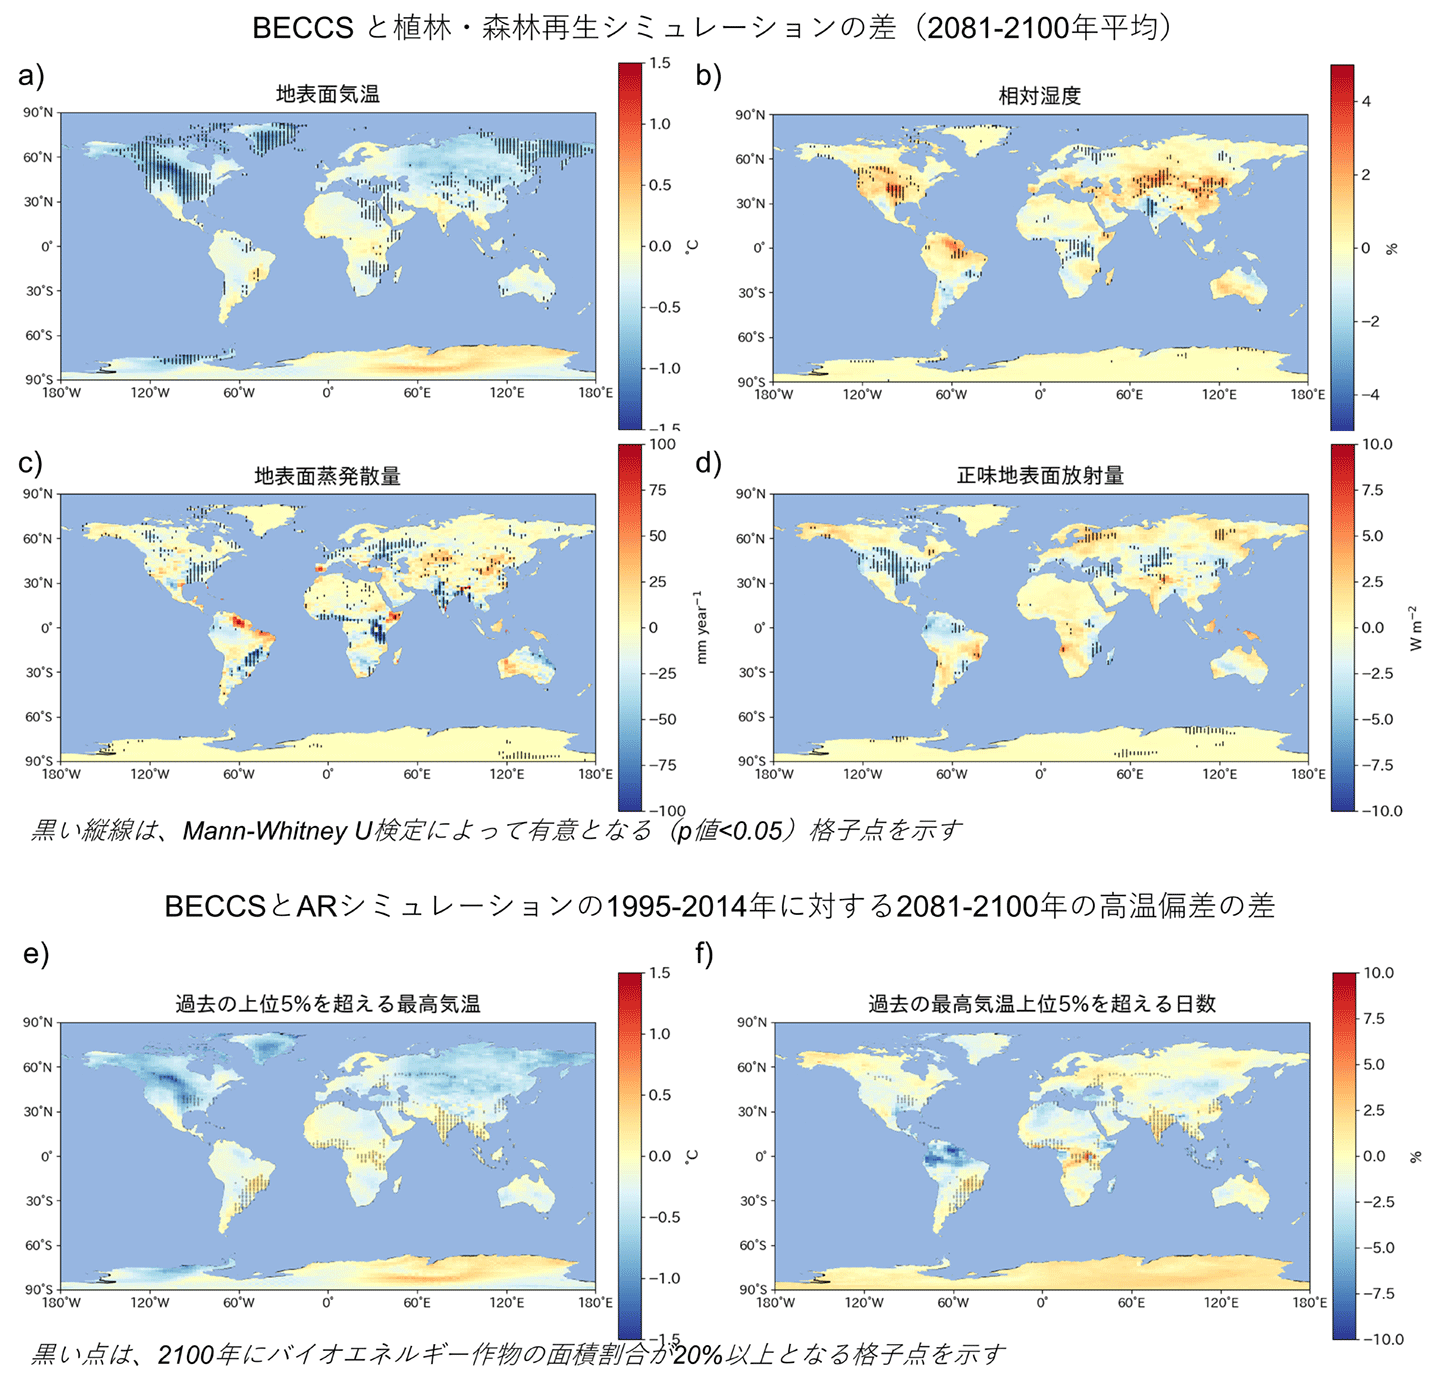 図3　BECCS実験と植林・森林再生実験における気候変化の空間分布。（a）地表面気温（℃）、（b）相対湿度（%）、（c）地表面蒸発散量（mm year-1）、（d）正味地表面放射量（W m-2）の、BECCS実験と植林・森林再生実験の2081年から2100年までの平均値の差を示す。また、1995年から2014年の最高気温の上位5%となる気温を閾値として、（e）閾値を超える最高気温（℃）、(f)閾値を超える日数（％）の、BECCS実験と植林・森林再生実験の2081年から2100年までの平均値の差を示す。黒い縦線は、Mann-Whitney U検定によって有意となる（p値＜0.05）格子点を示す。また、黒い点は、2100年にバイオエネルギー作物の面積割合が20%以上となる格子点を示す。正の値は、BECCS実験の方が植林・森林再生実験よりも大きい場合を示す。